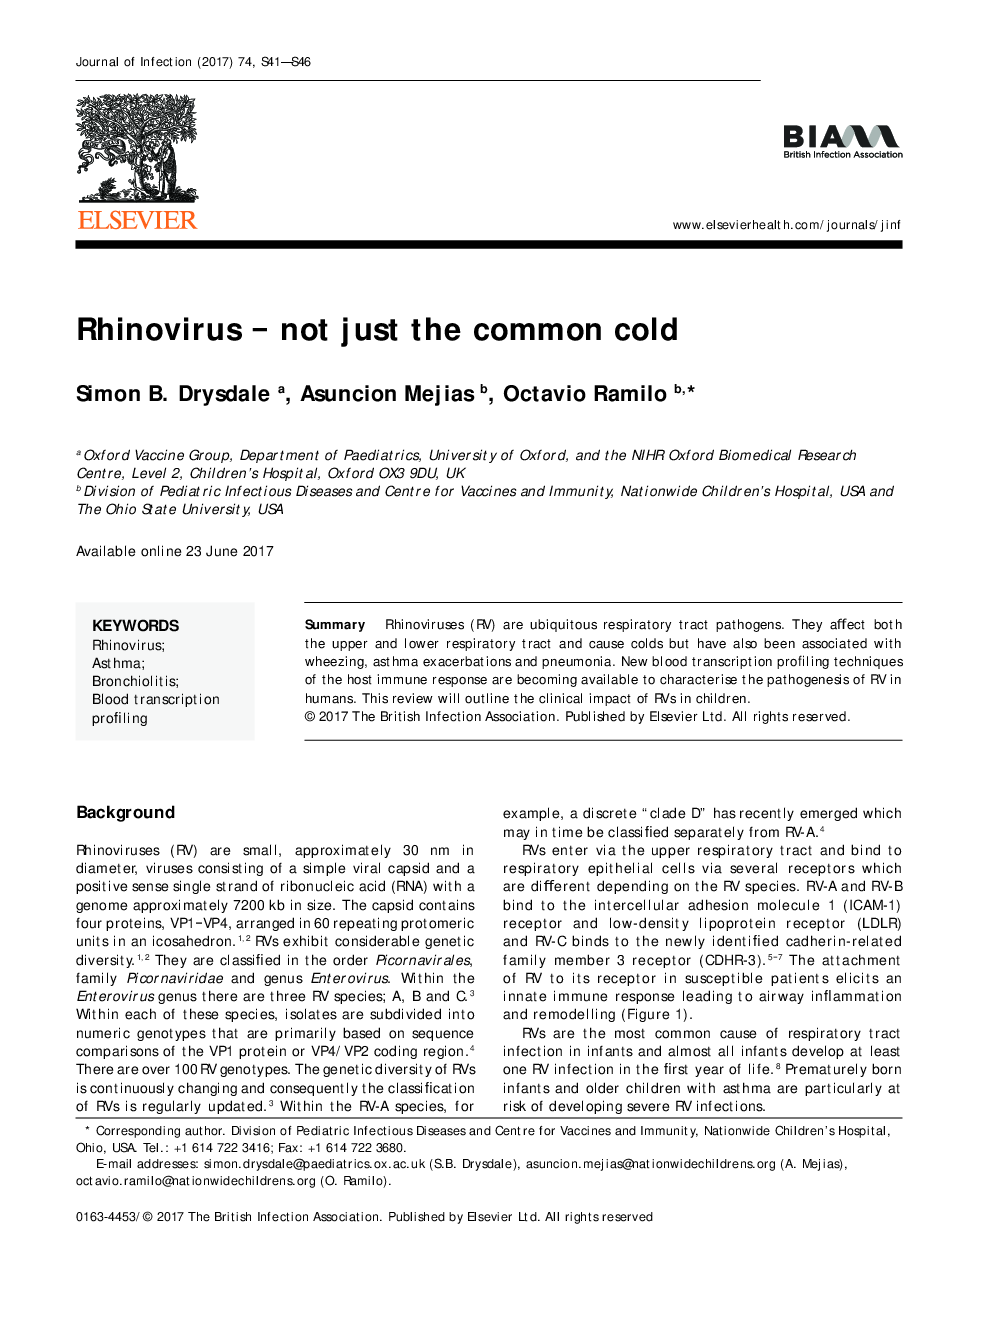 رینوویروس - نه تنها سرماخوردگی 